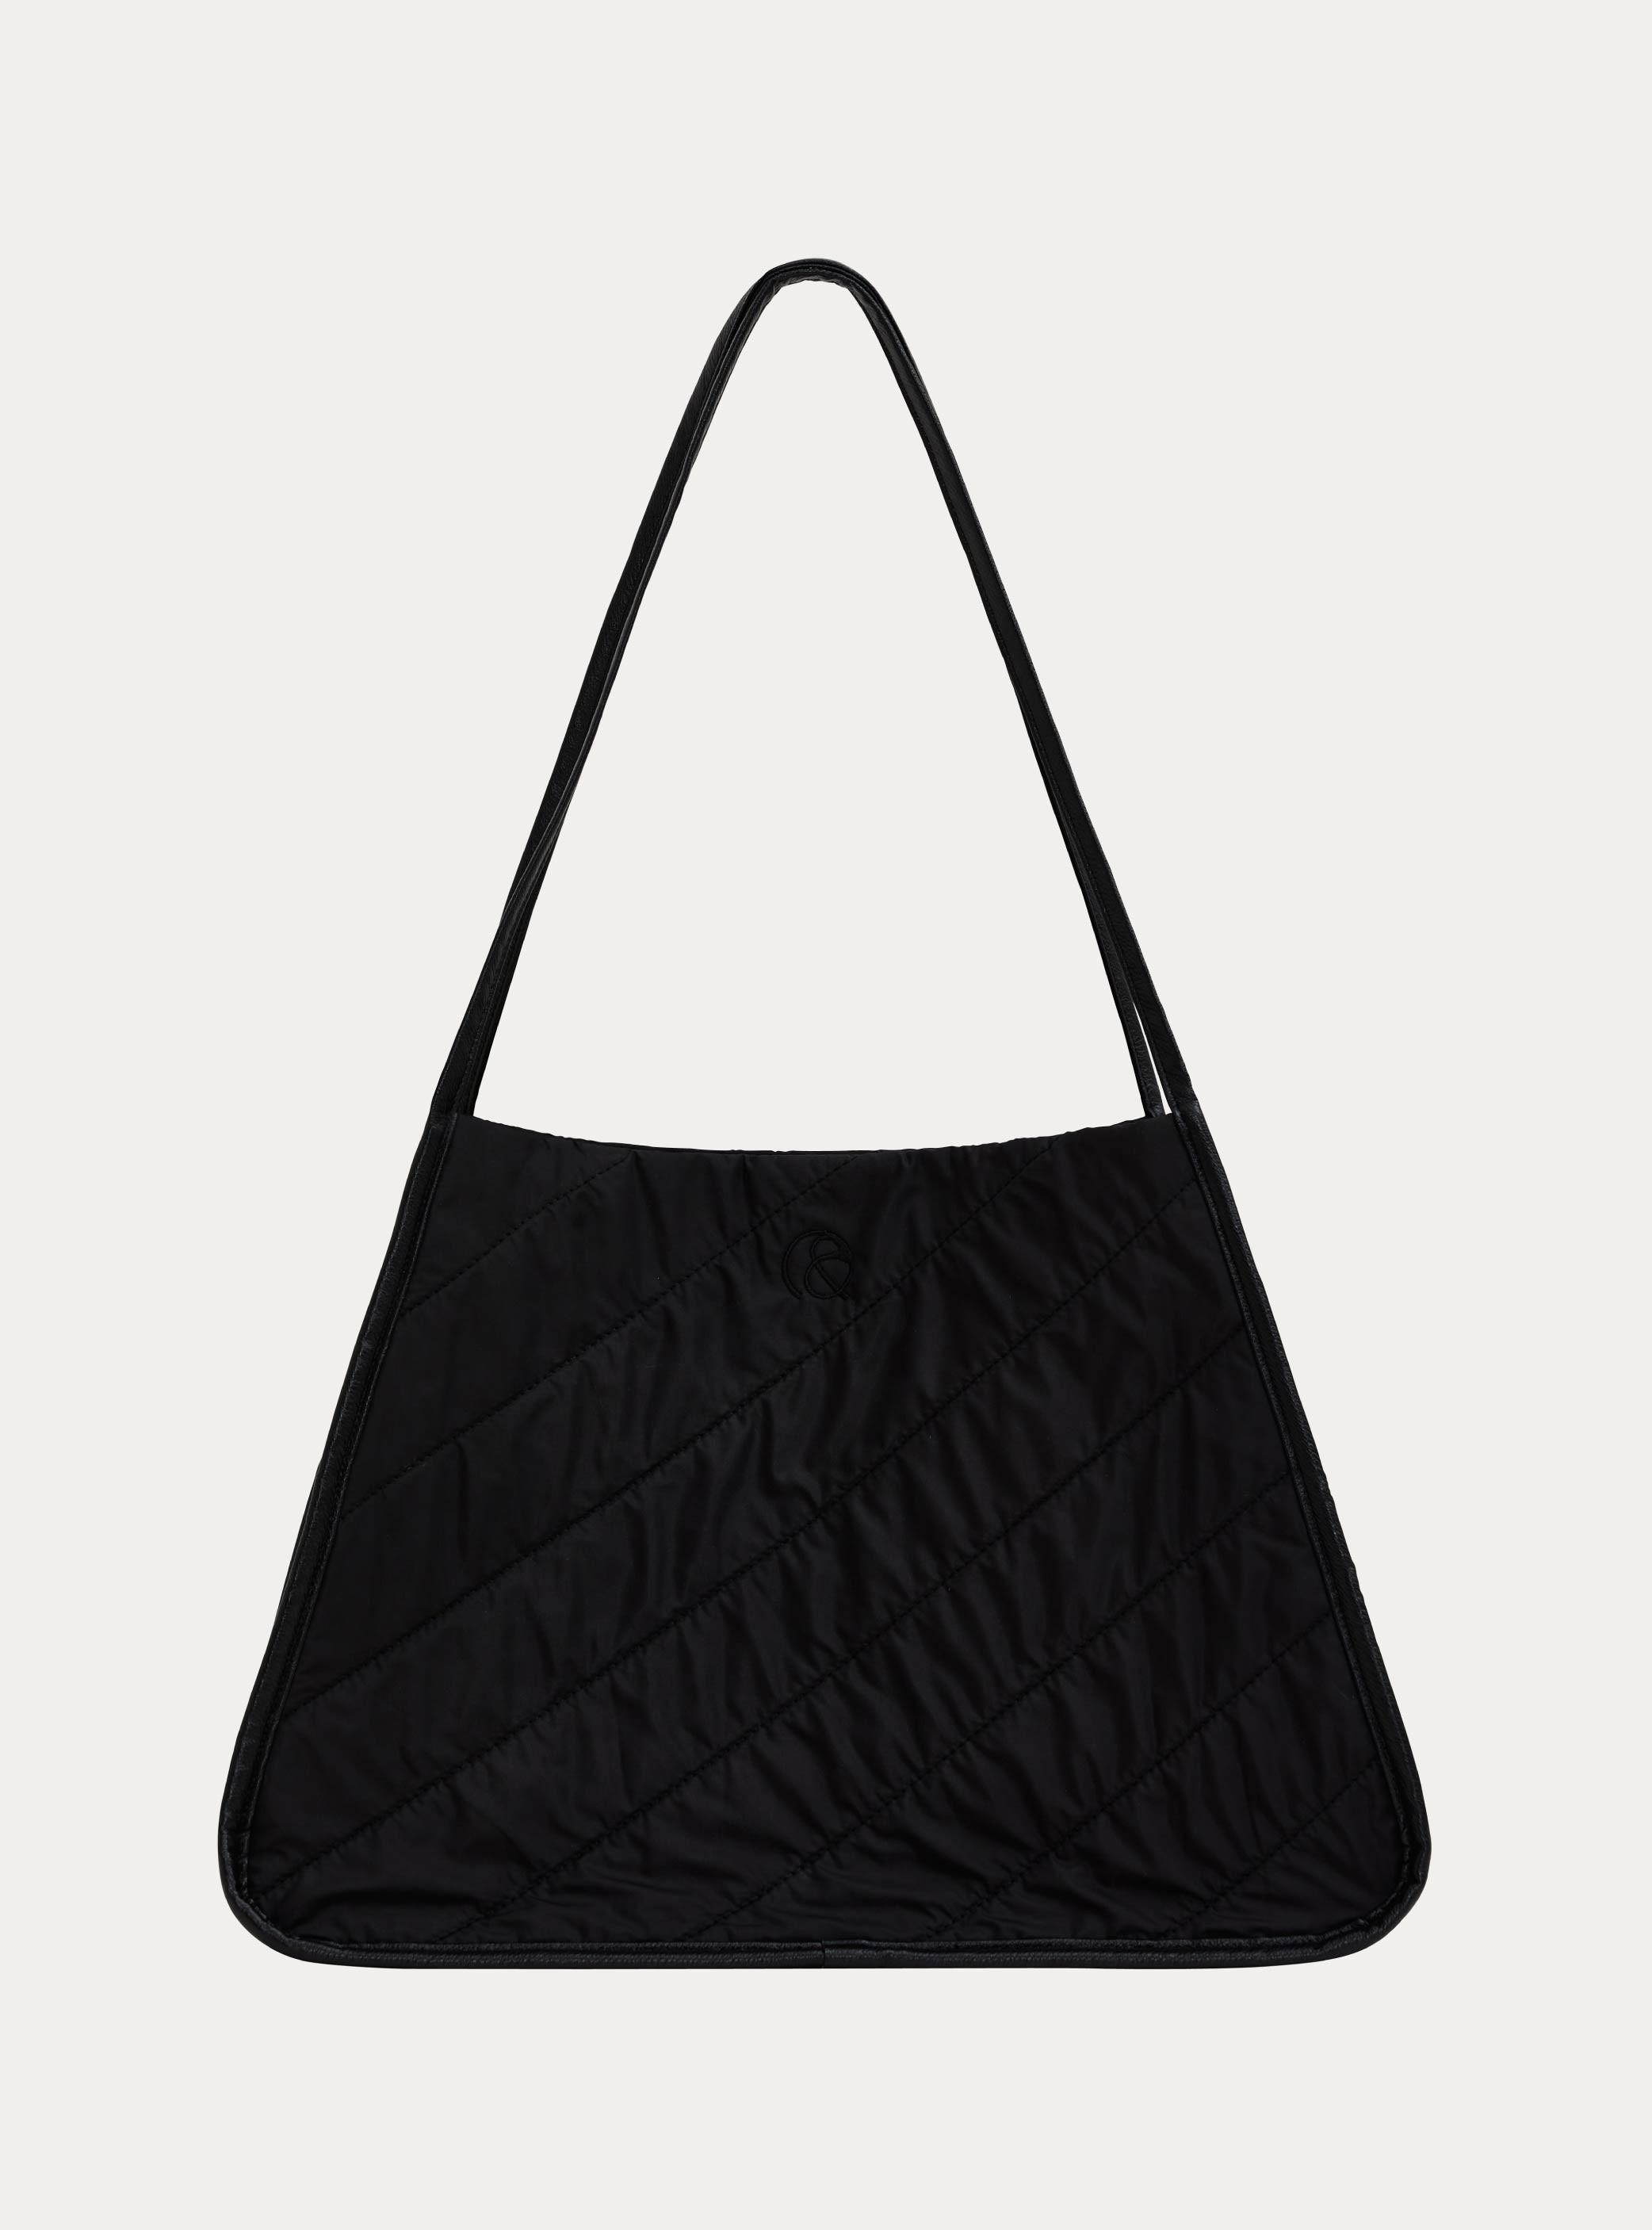 이그리트 토트백 블랙  Ygritte tote bag : black